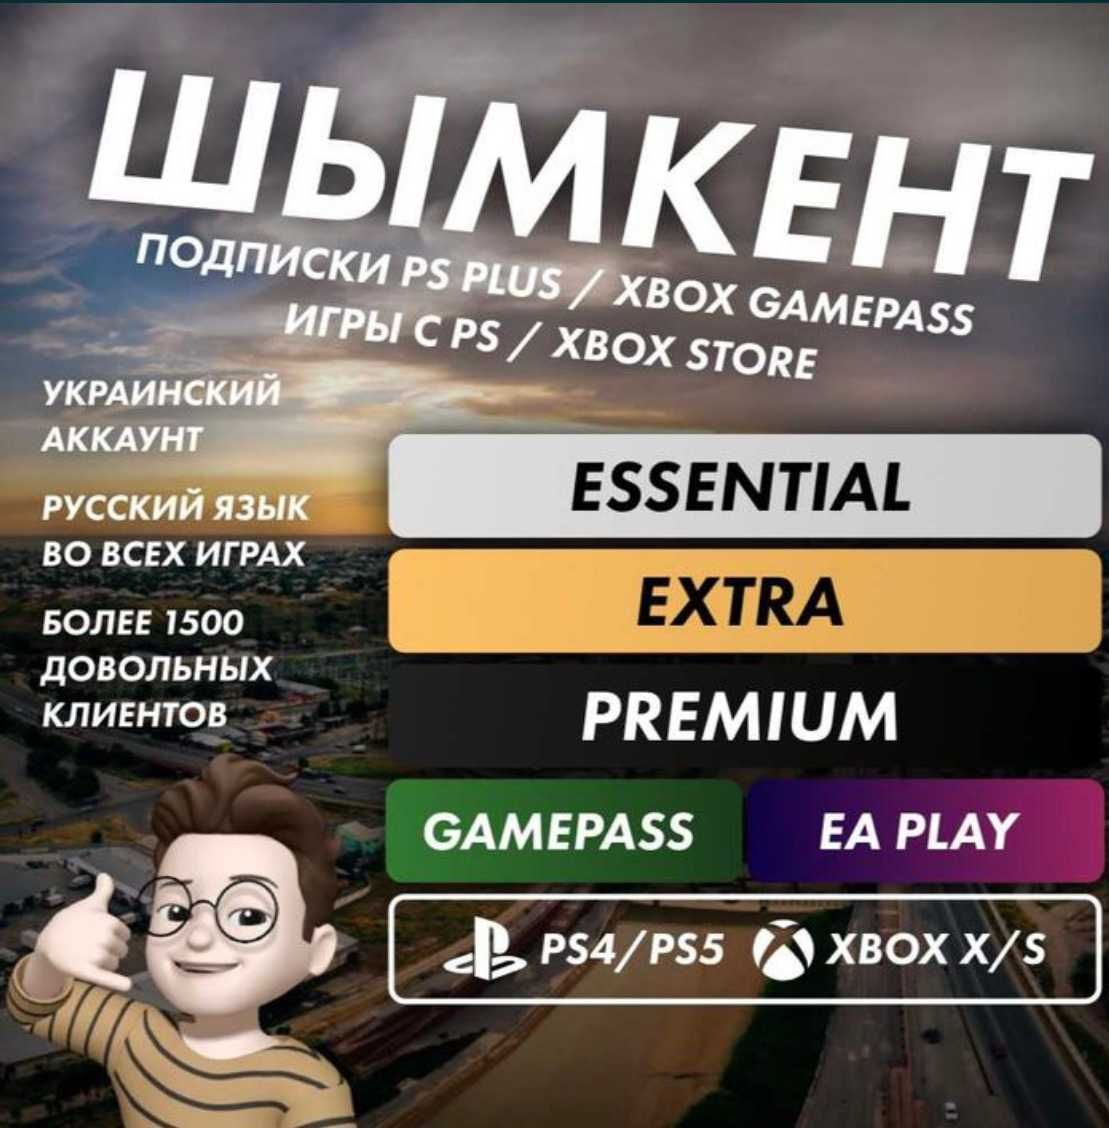 PS PLUS PS4PS5 Xbox продажа игр(fifa24,gta,mk1, last of us итд)